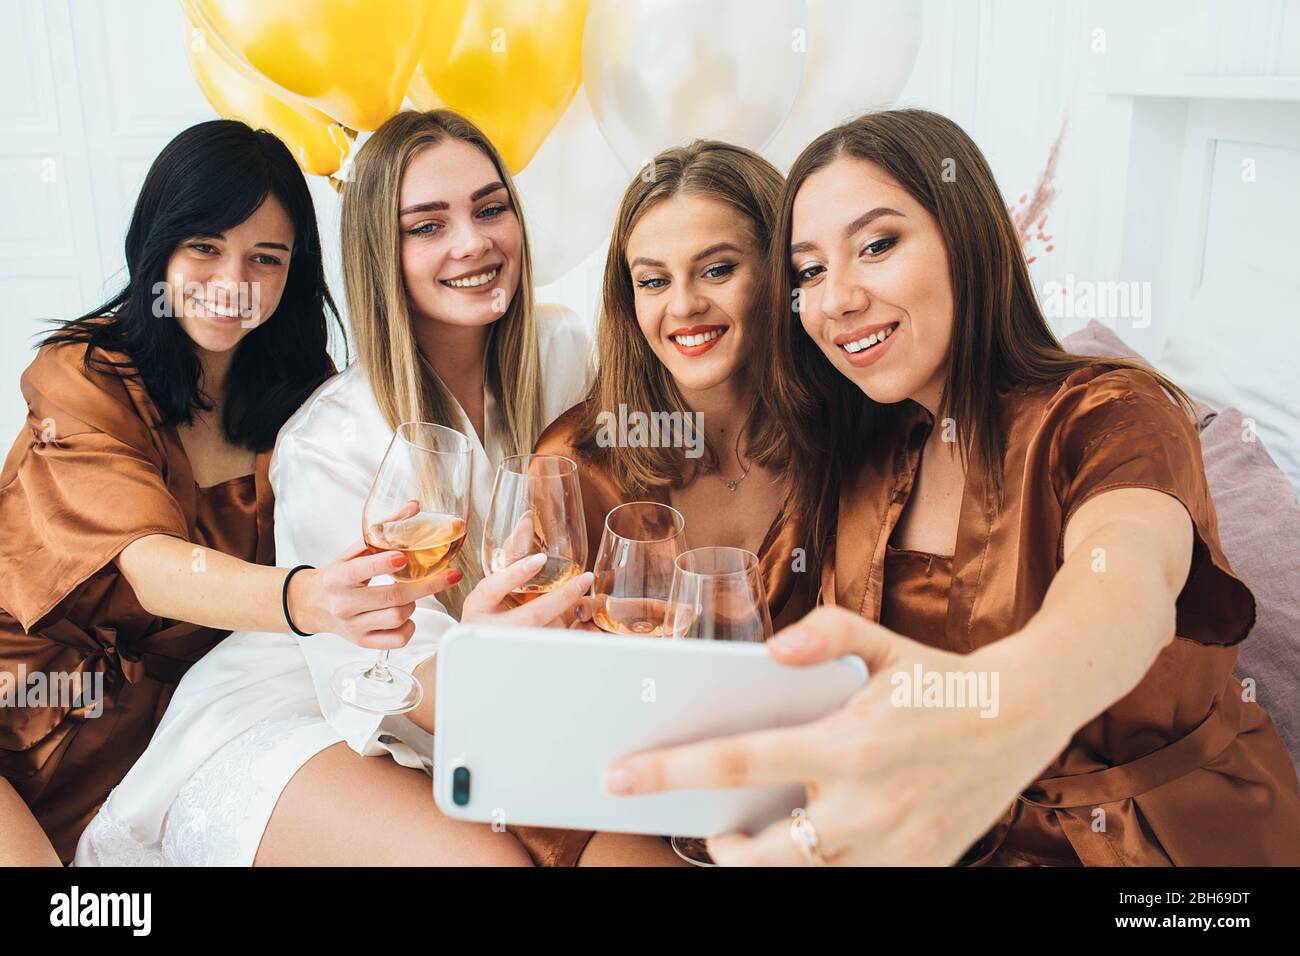 Week-end Bachelorette. Les femmes de chambre qui font du selfie et de la photo amusante, ont une fête fraîche avec de l'alcool Banque D'Images